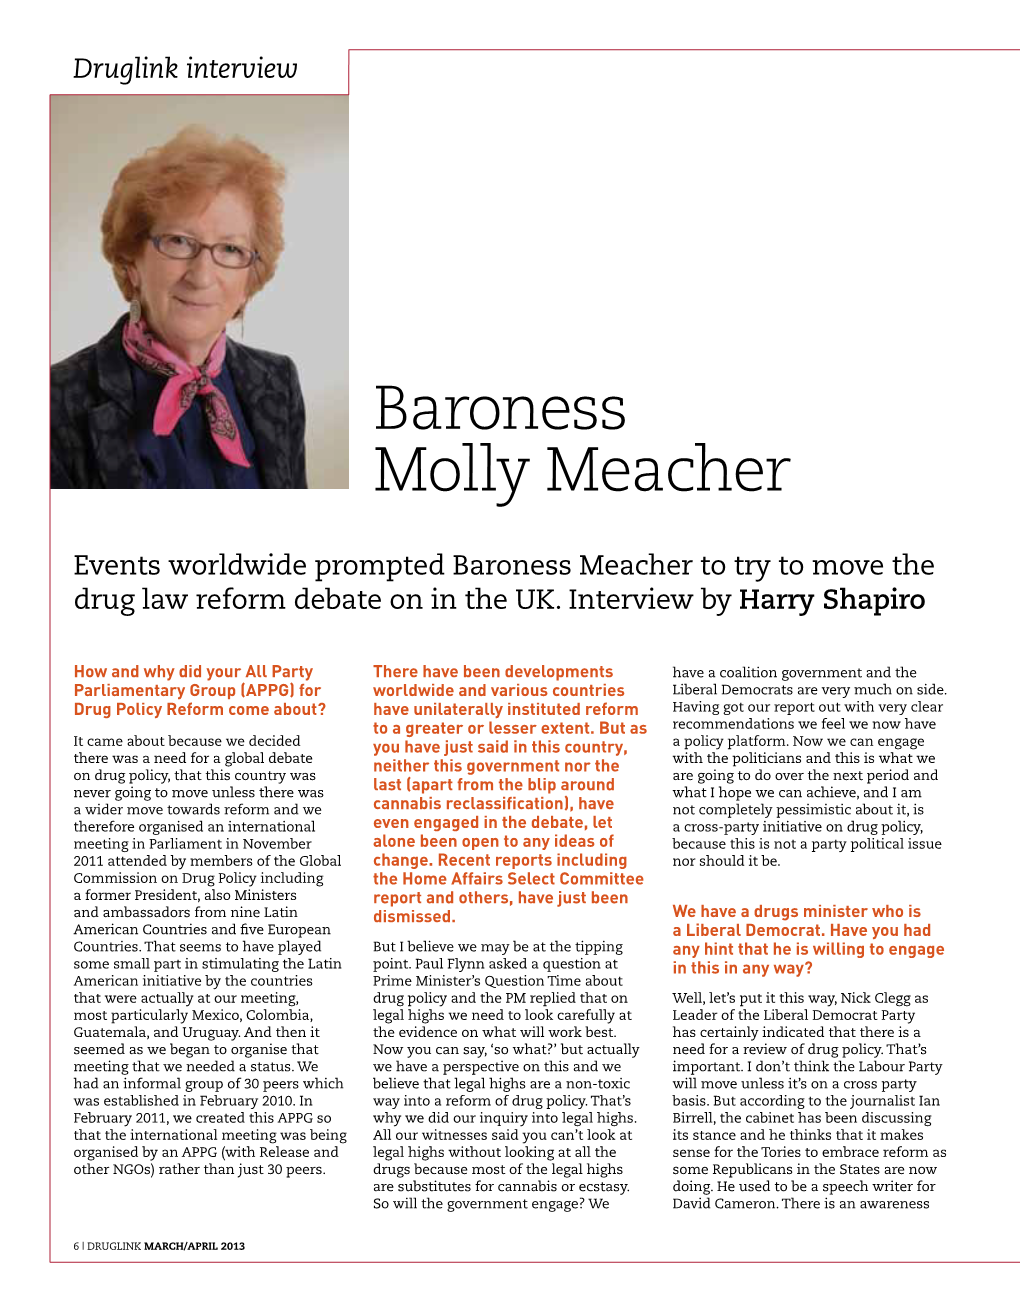 Baroness Molly Meacher